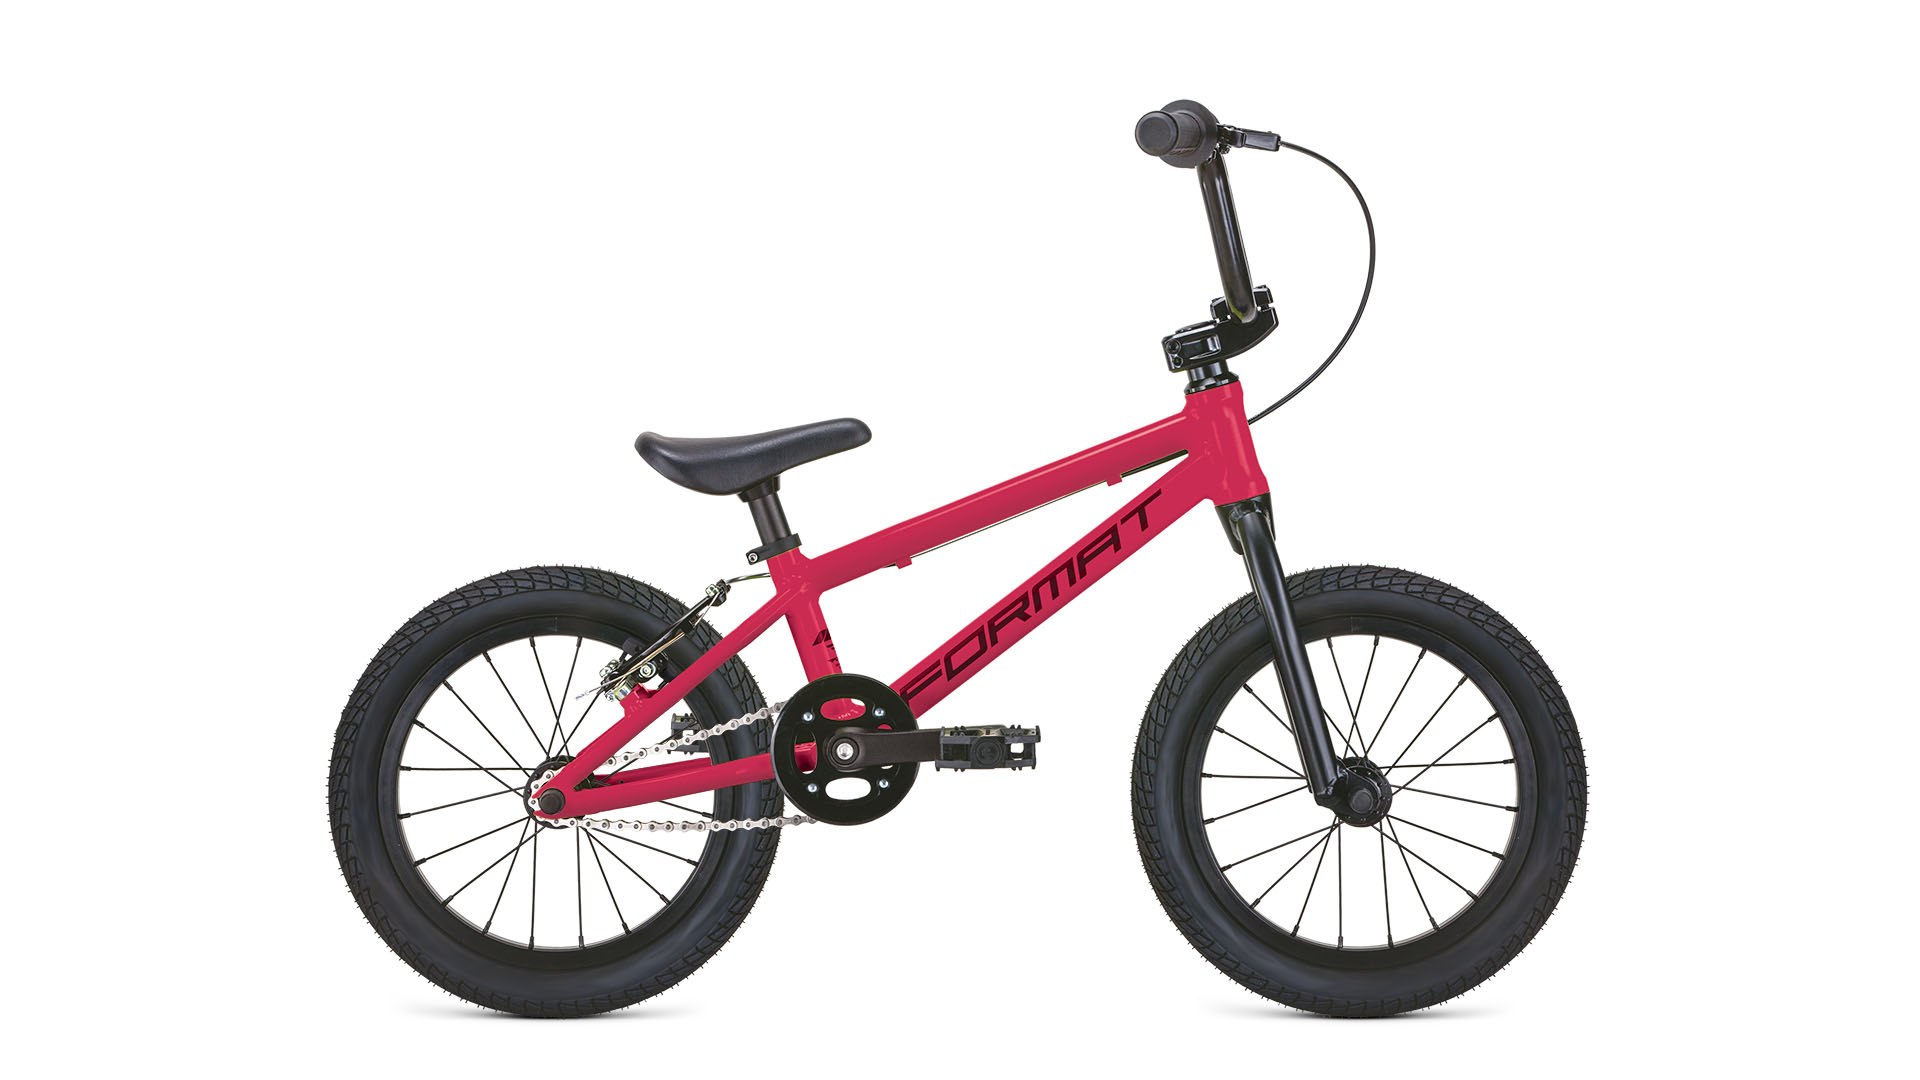  Отзывы о Детском велосипеде Format Format Kids Bmx 16 (2021) 2021